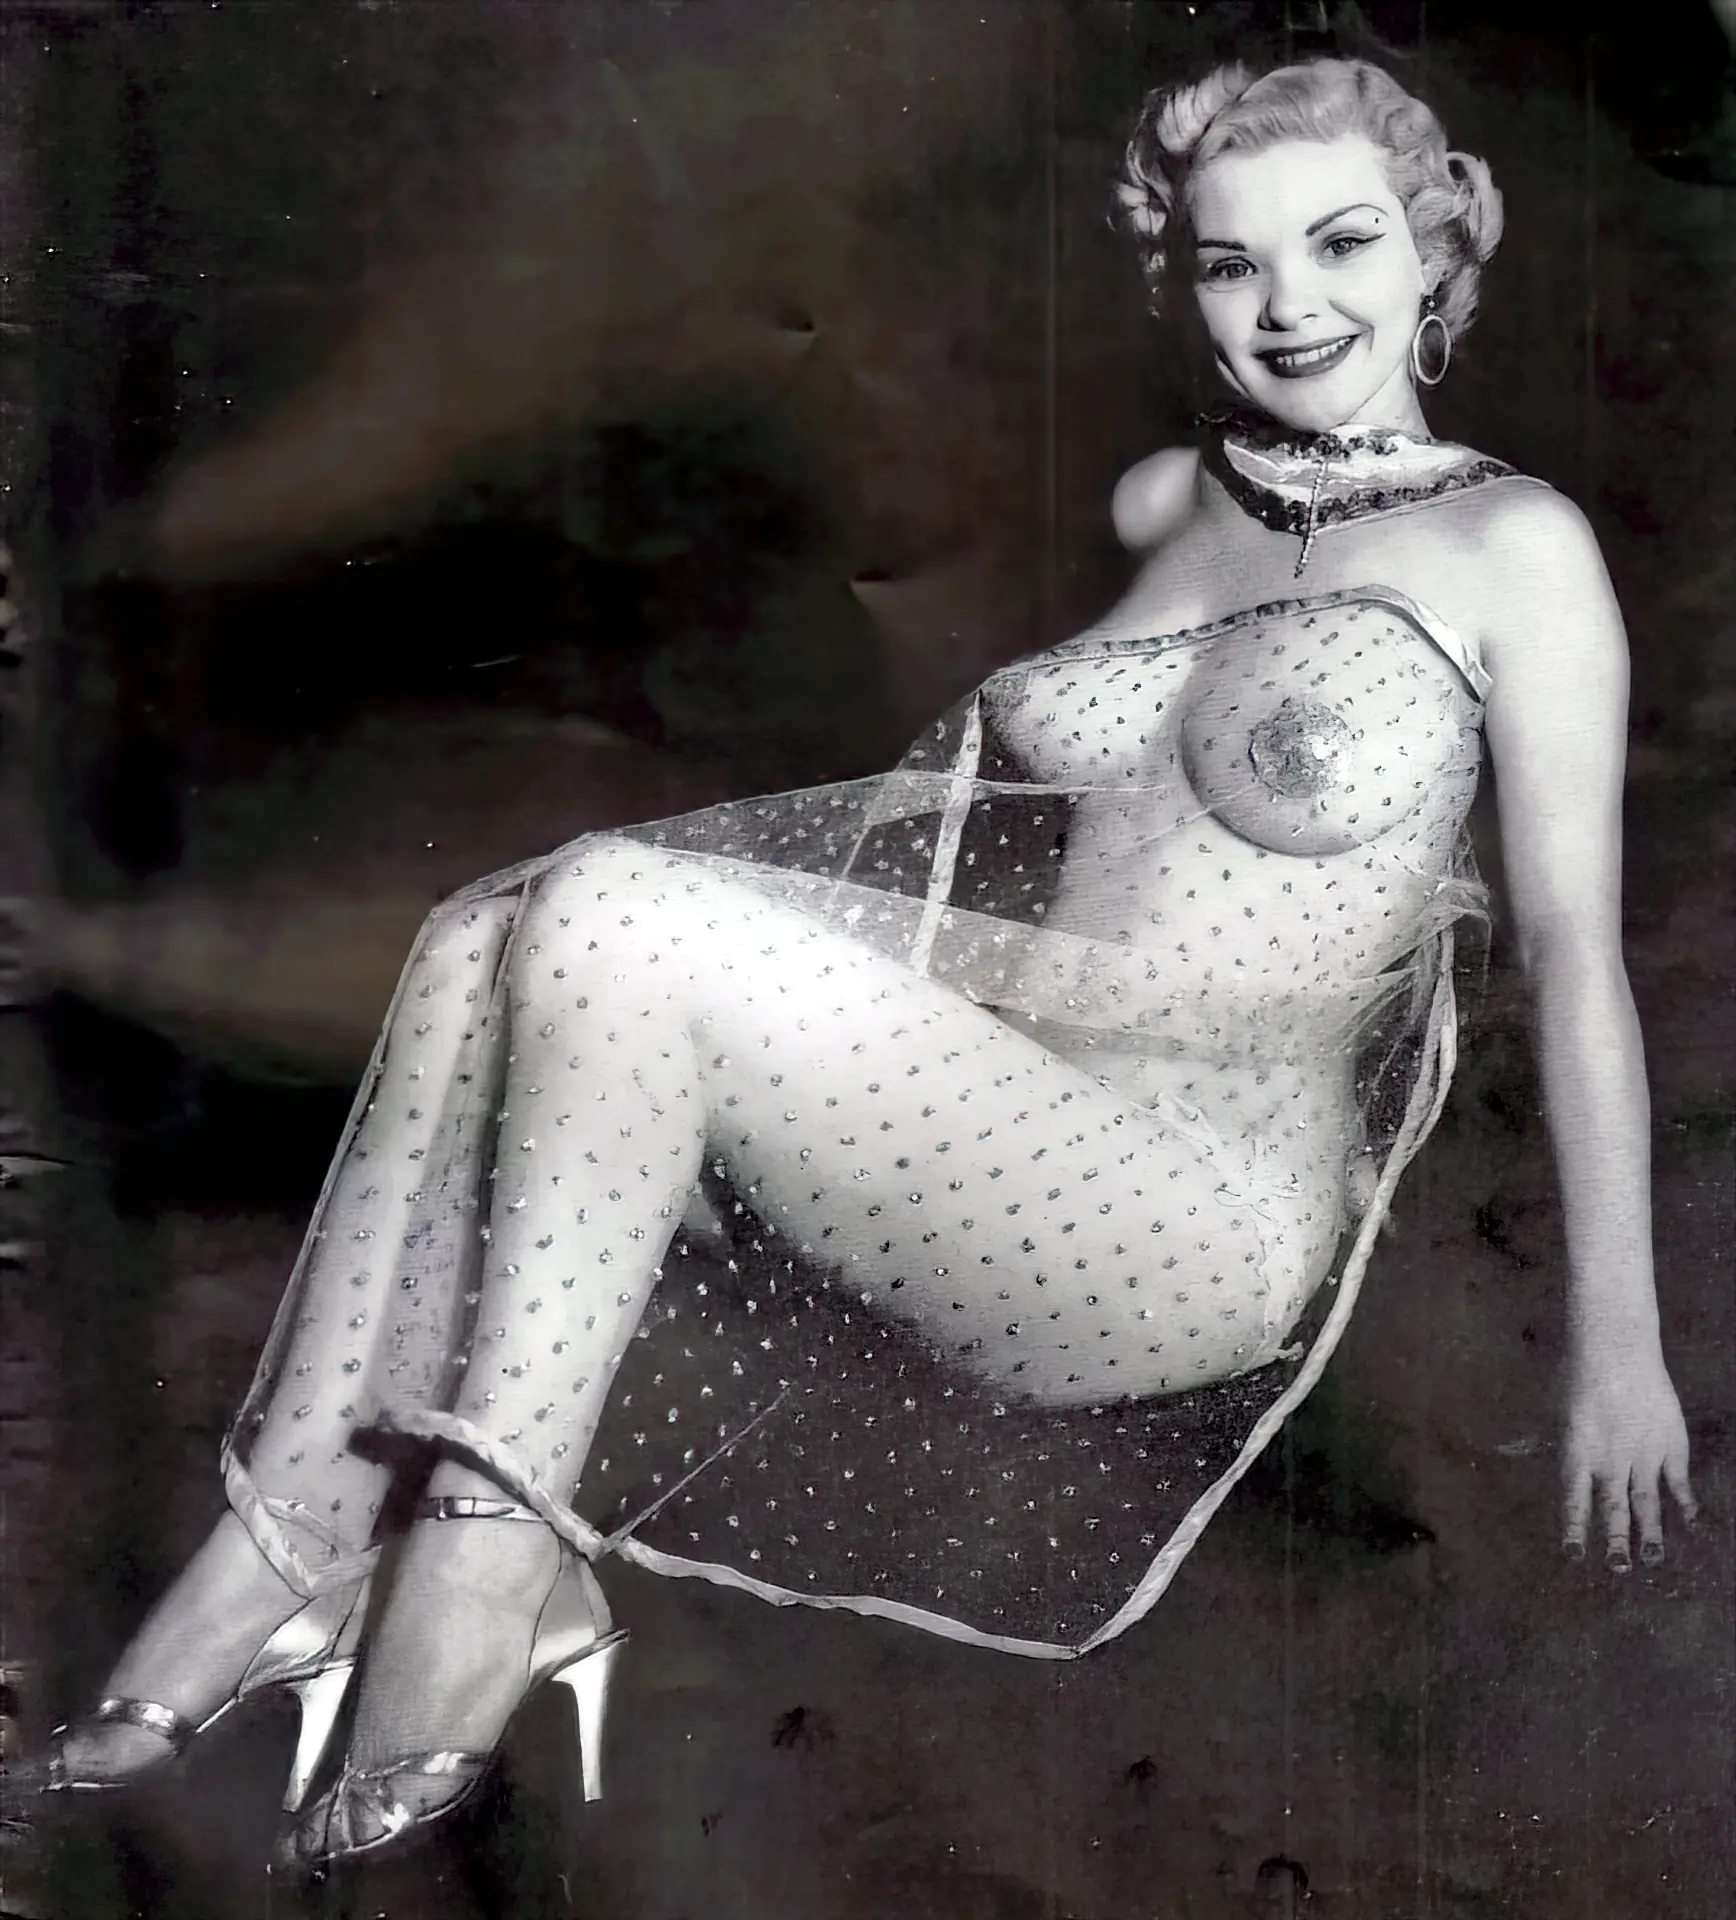 Nude candy photos barr 1959 Photos. 